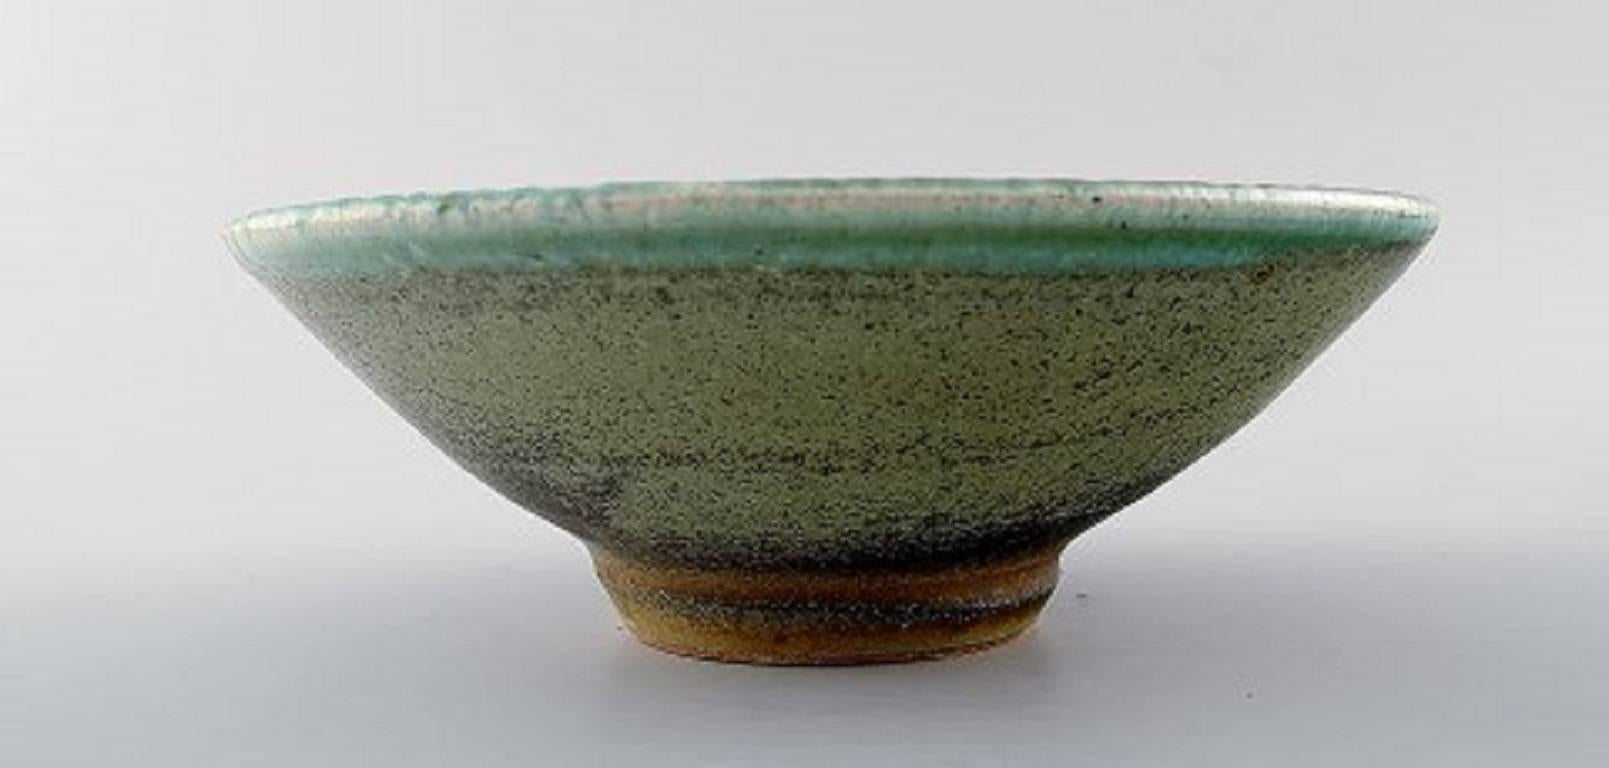 Danish ceramist.
Handmade, unique ceramic bowl.
Signed illegible.
Measures: 20 cm. x 8 cm.
In perfect condition.